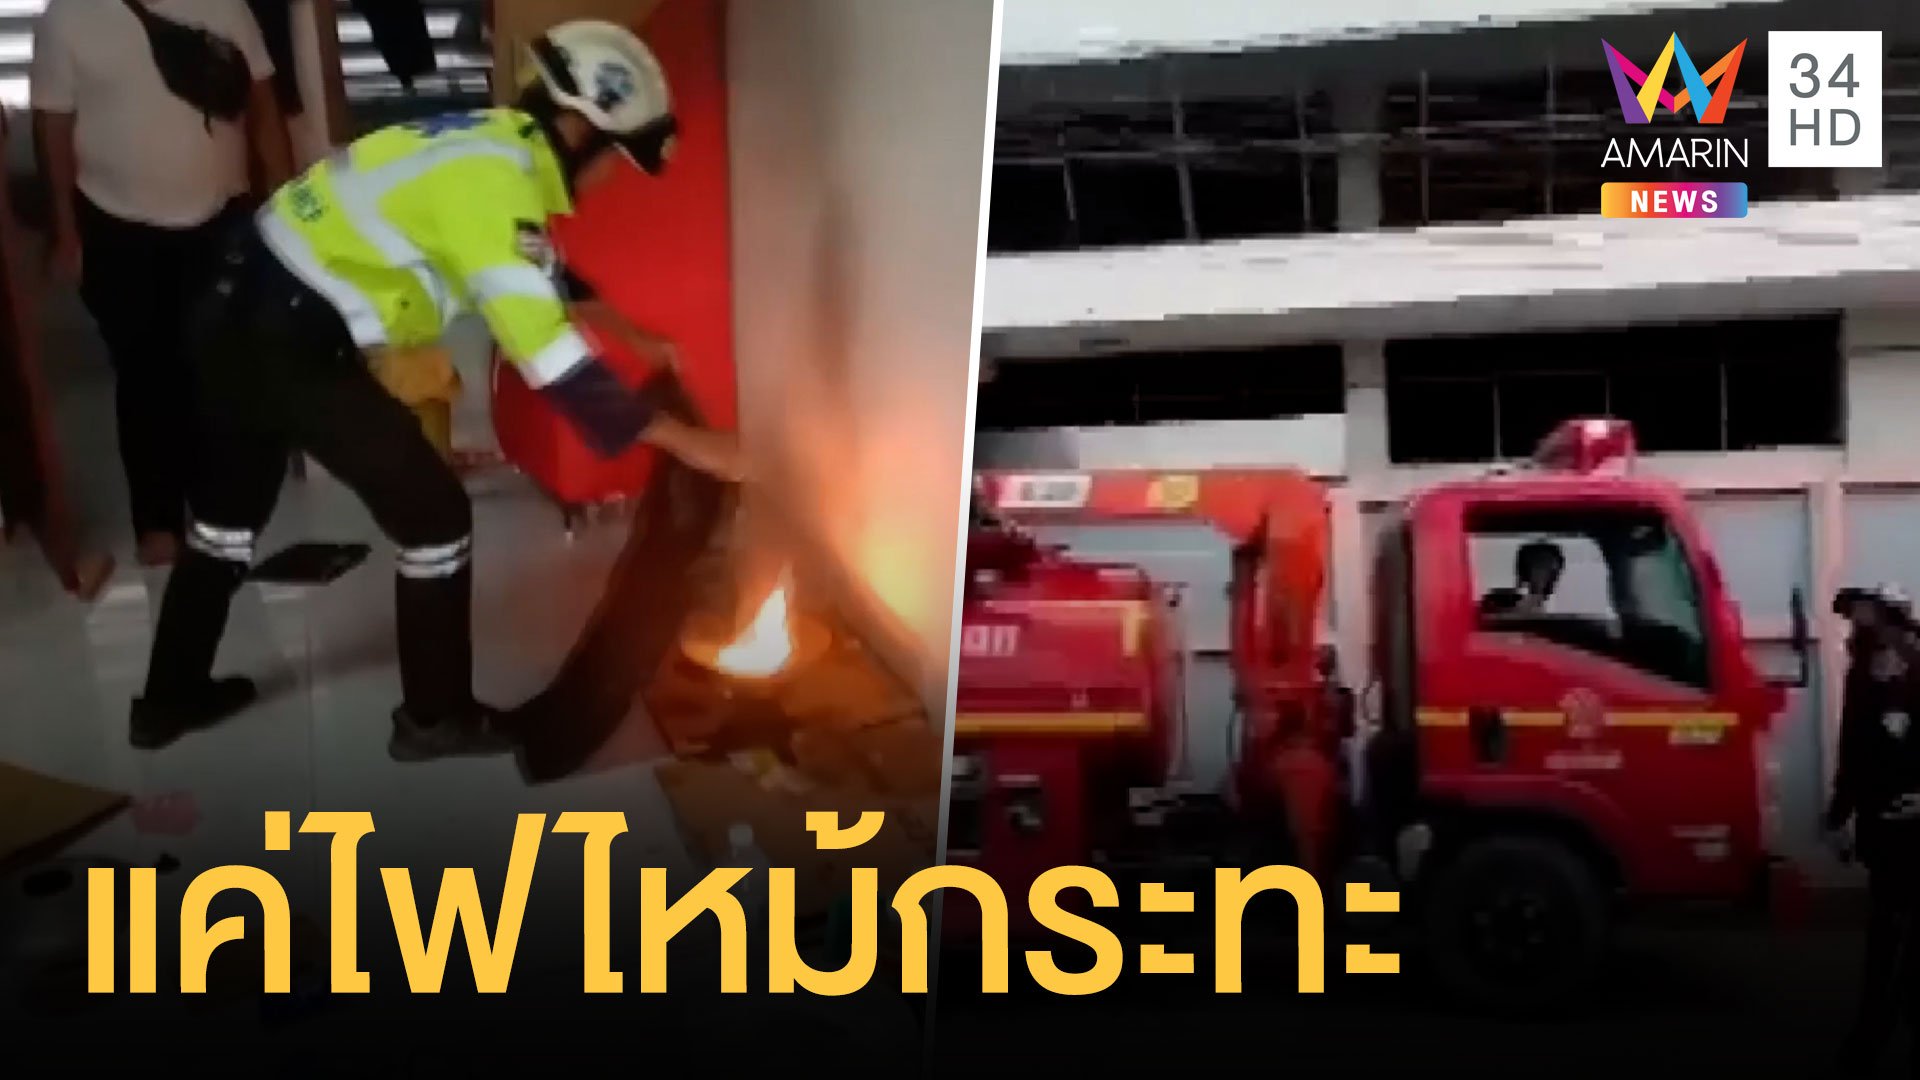 คนแจ้งมีไฟไหม้หอพัก หน่วยดับเพลิงมาดูที่แท้ไฟไหม้กระทะ | ข่าวอรุณอมรินทร์ | 16 พ.ค. 64 | AMARIN TVHD34